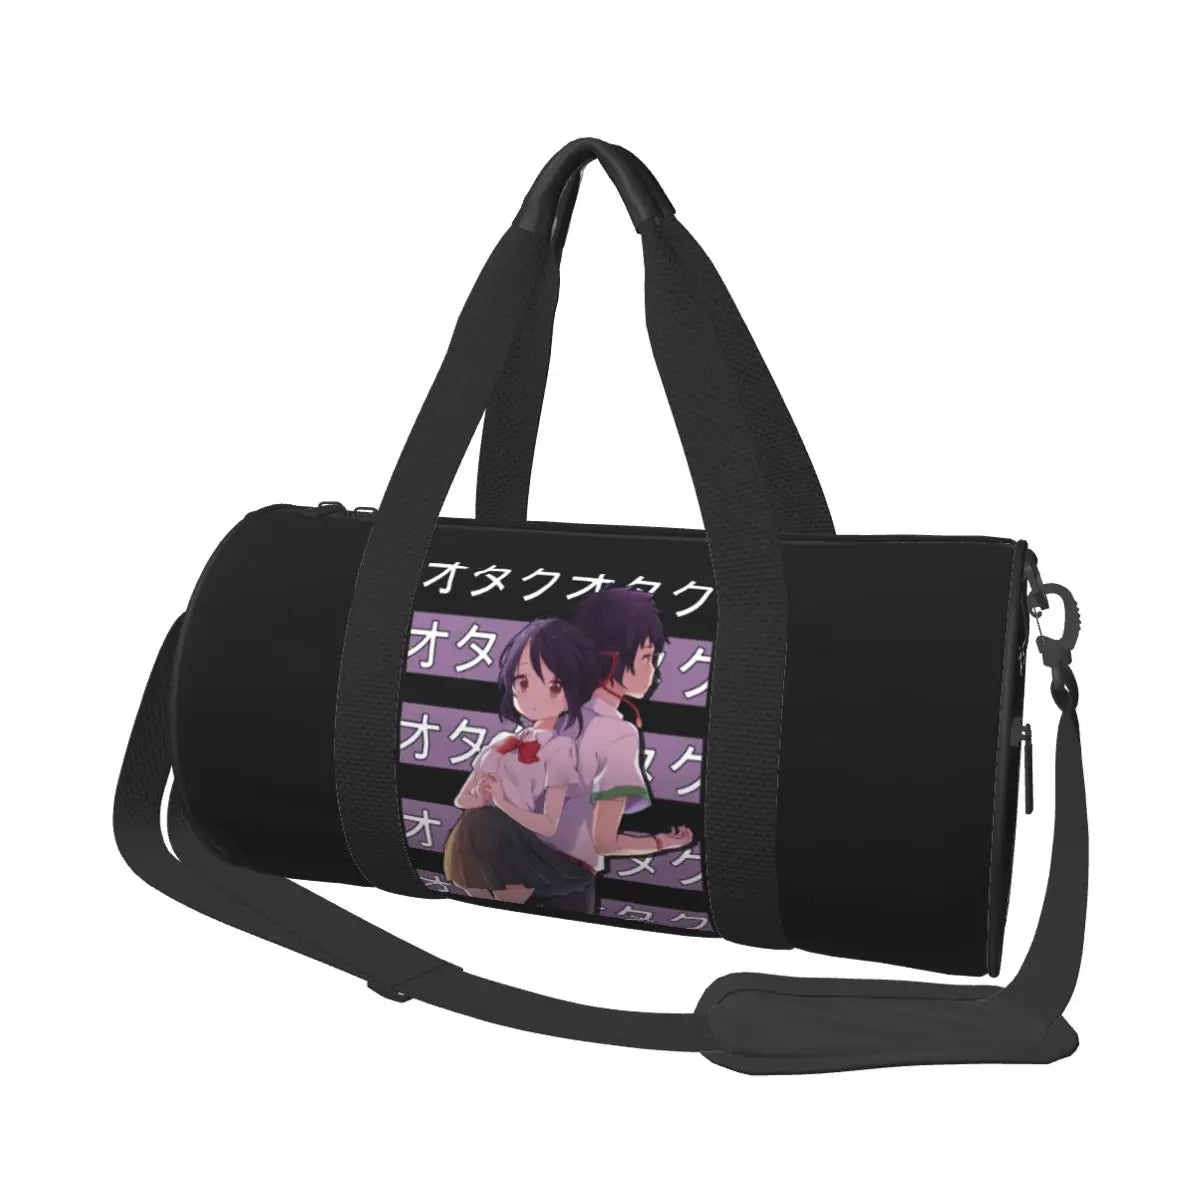 Kimi No Nawa Anime Duffle Bag As Picture